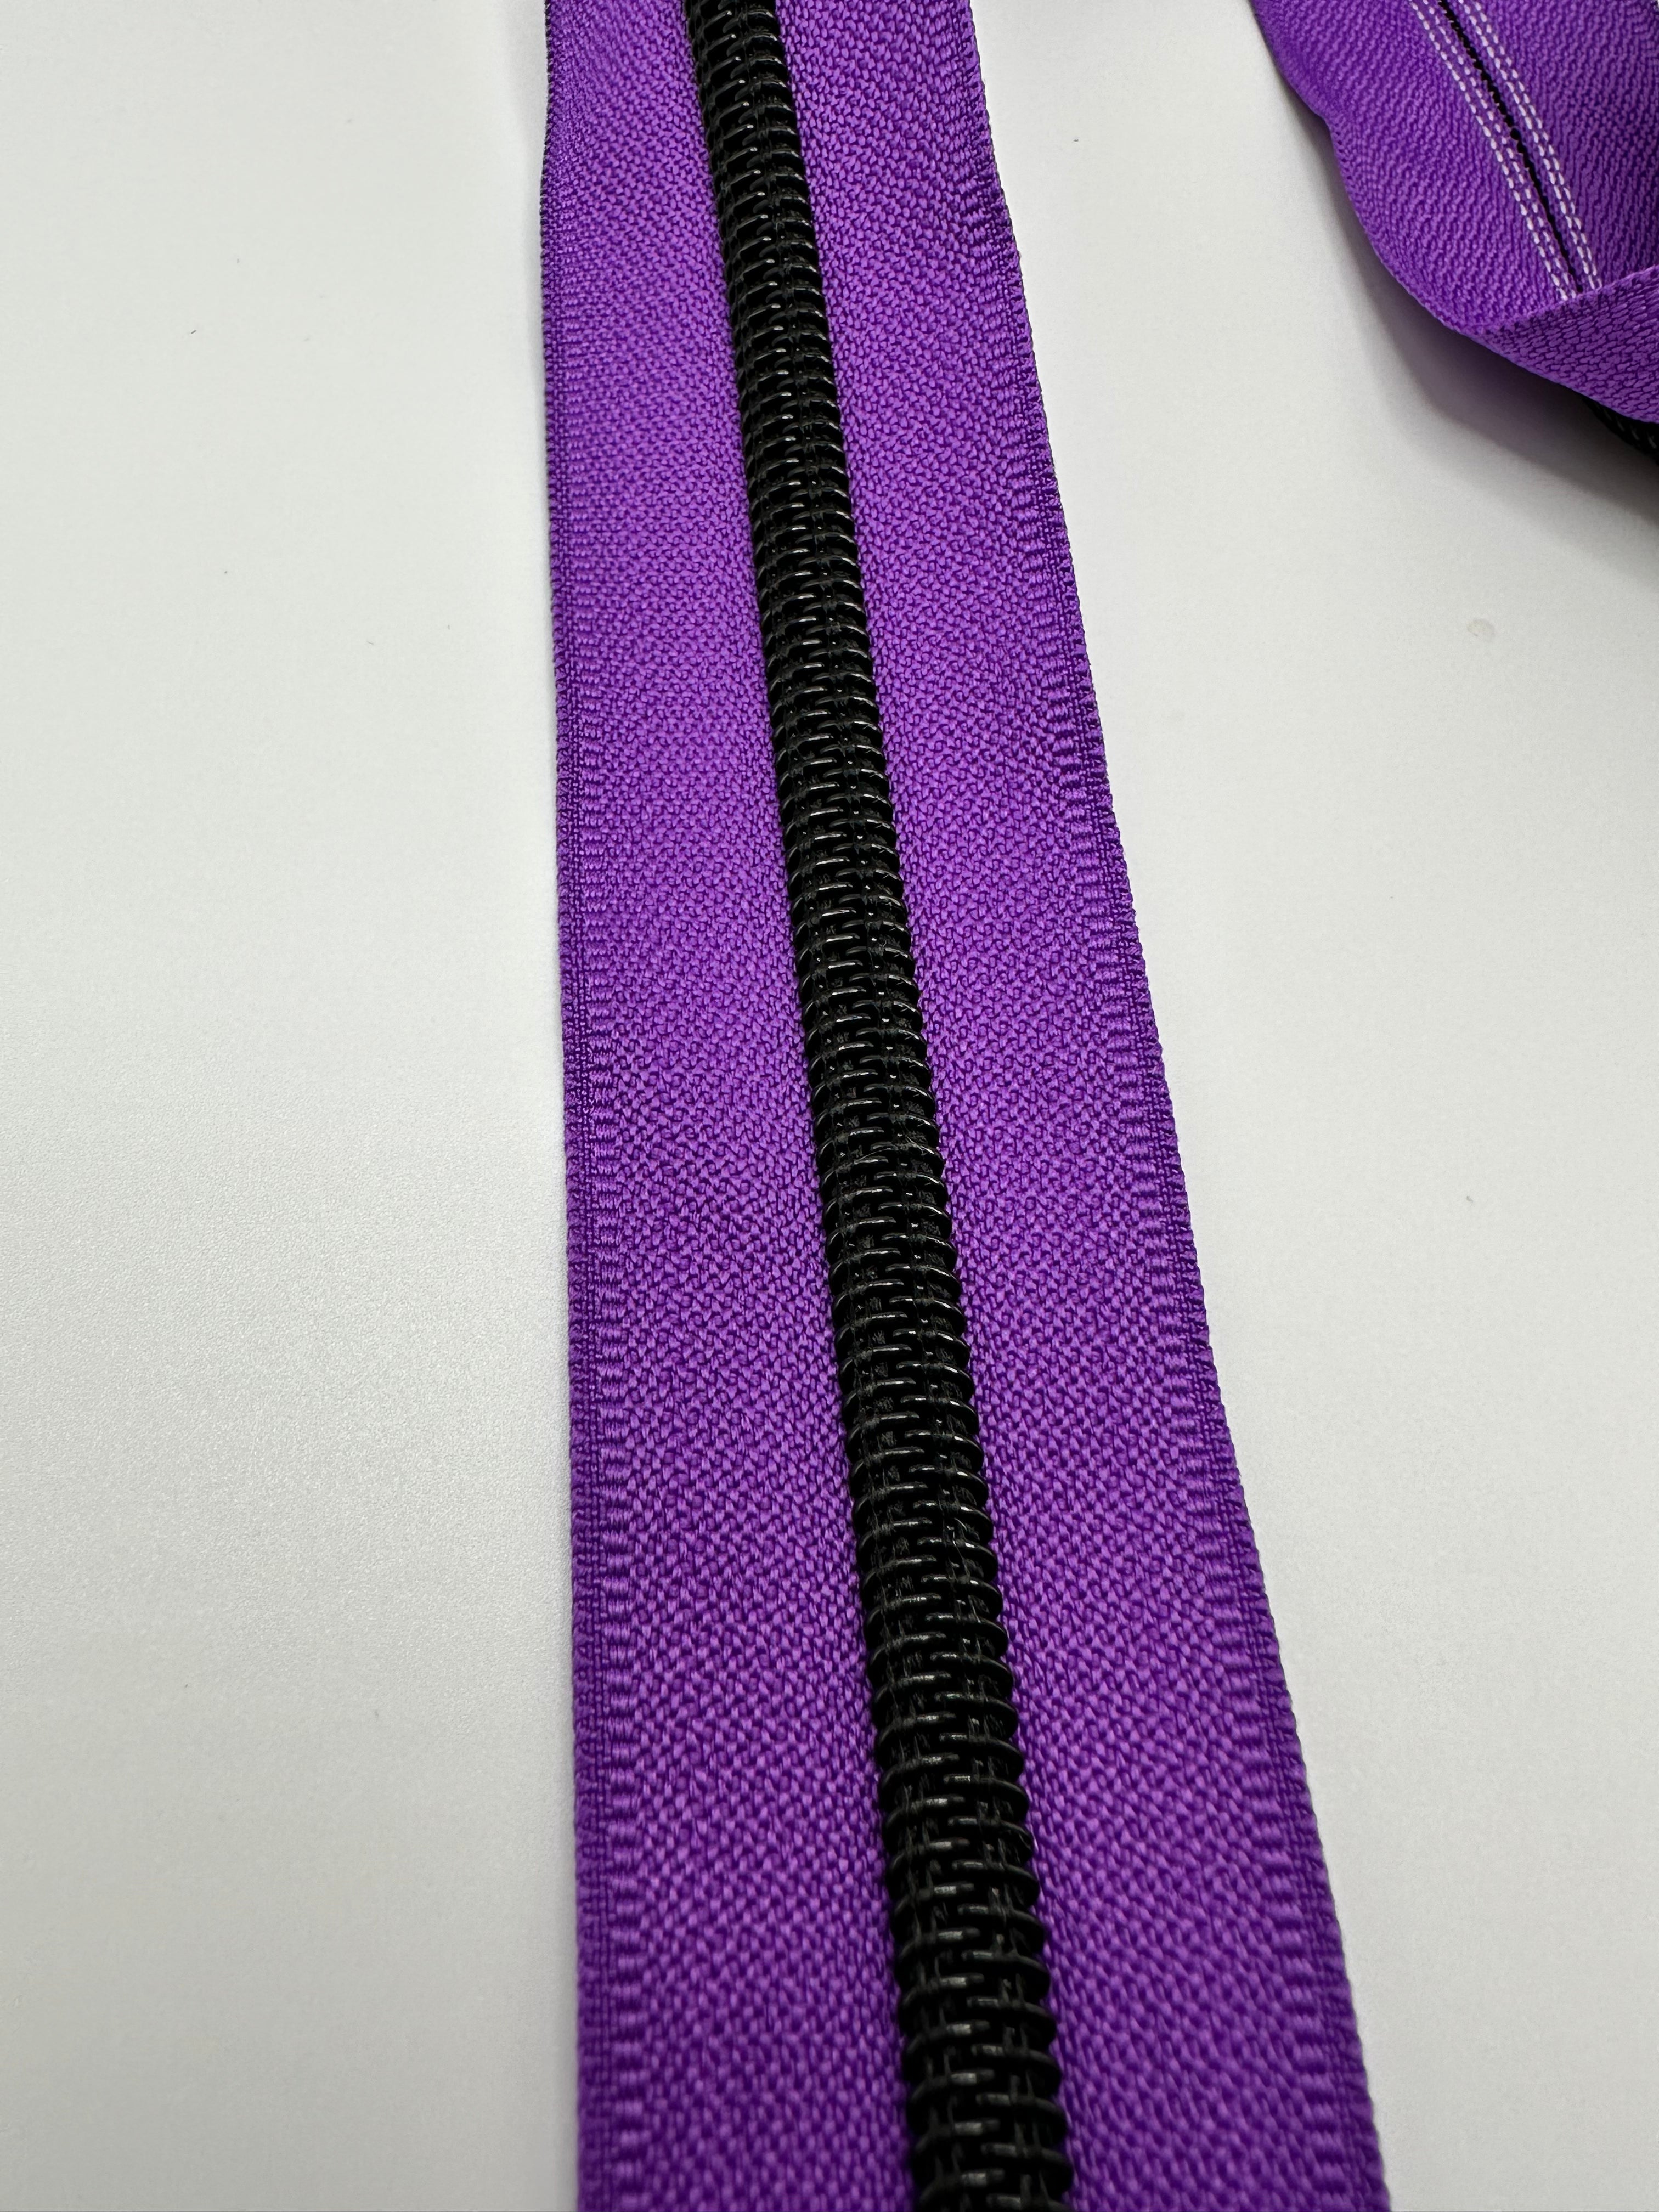 Black teeth on purple zipper tape